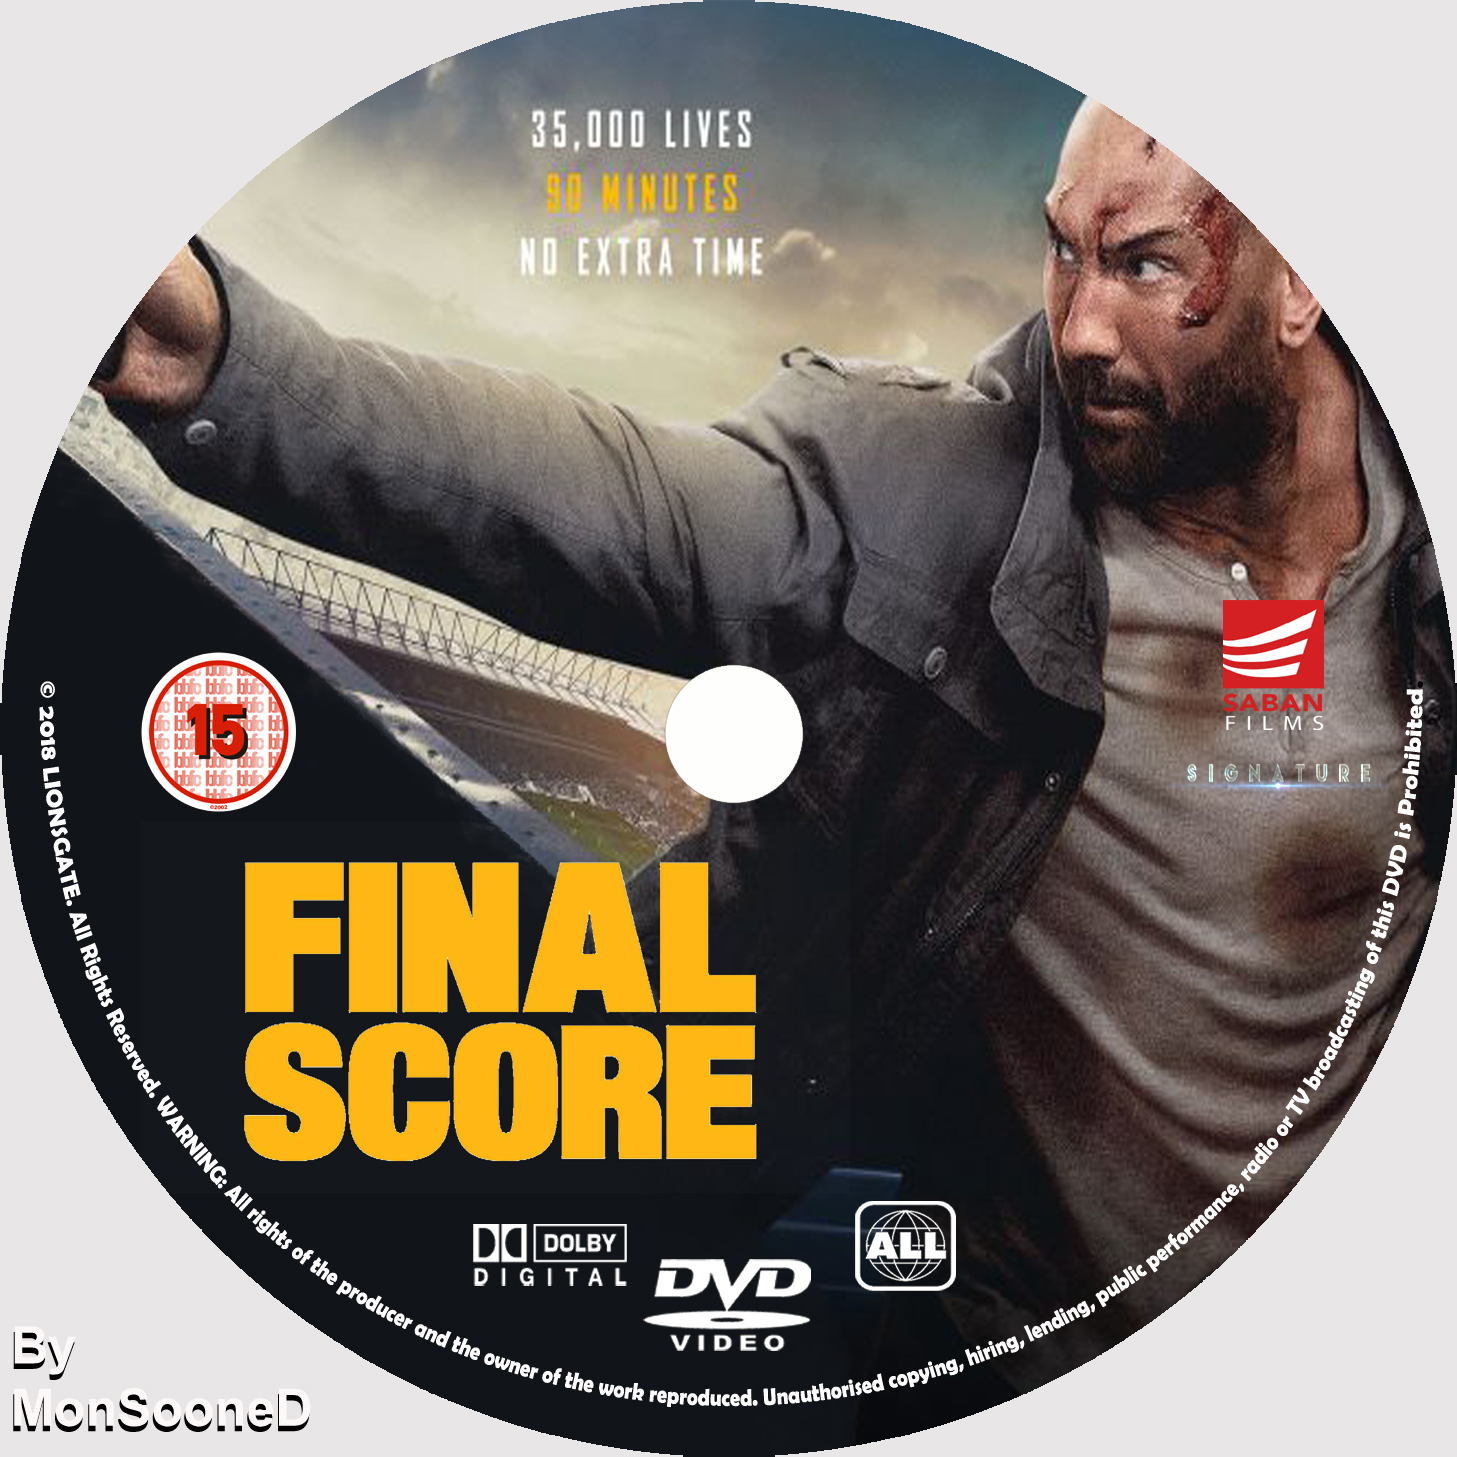 Final score. Final score 2018. The Final score Netflix. Final.score.2018.постеры. Final score 2018 poster.